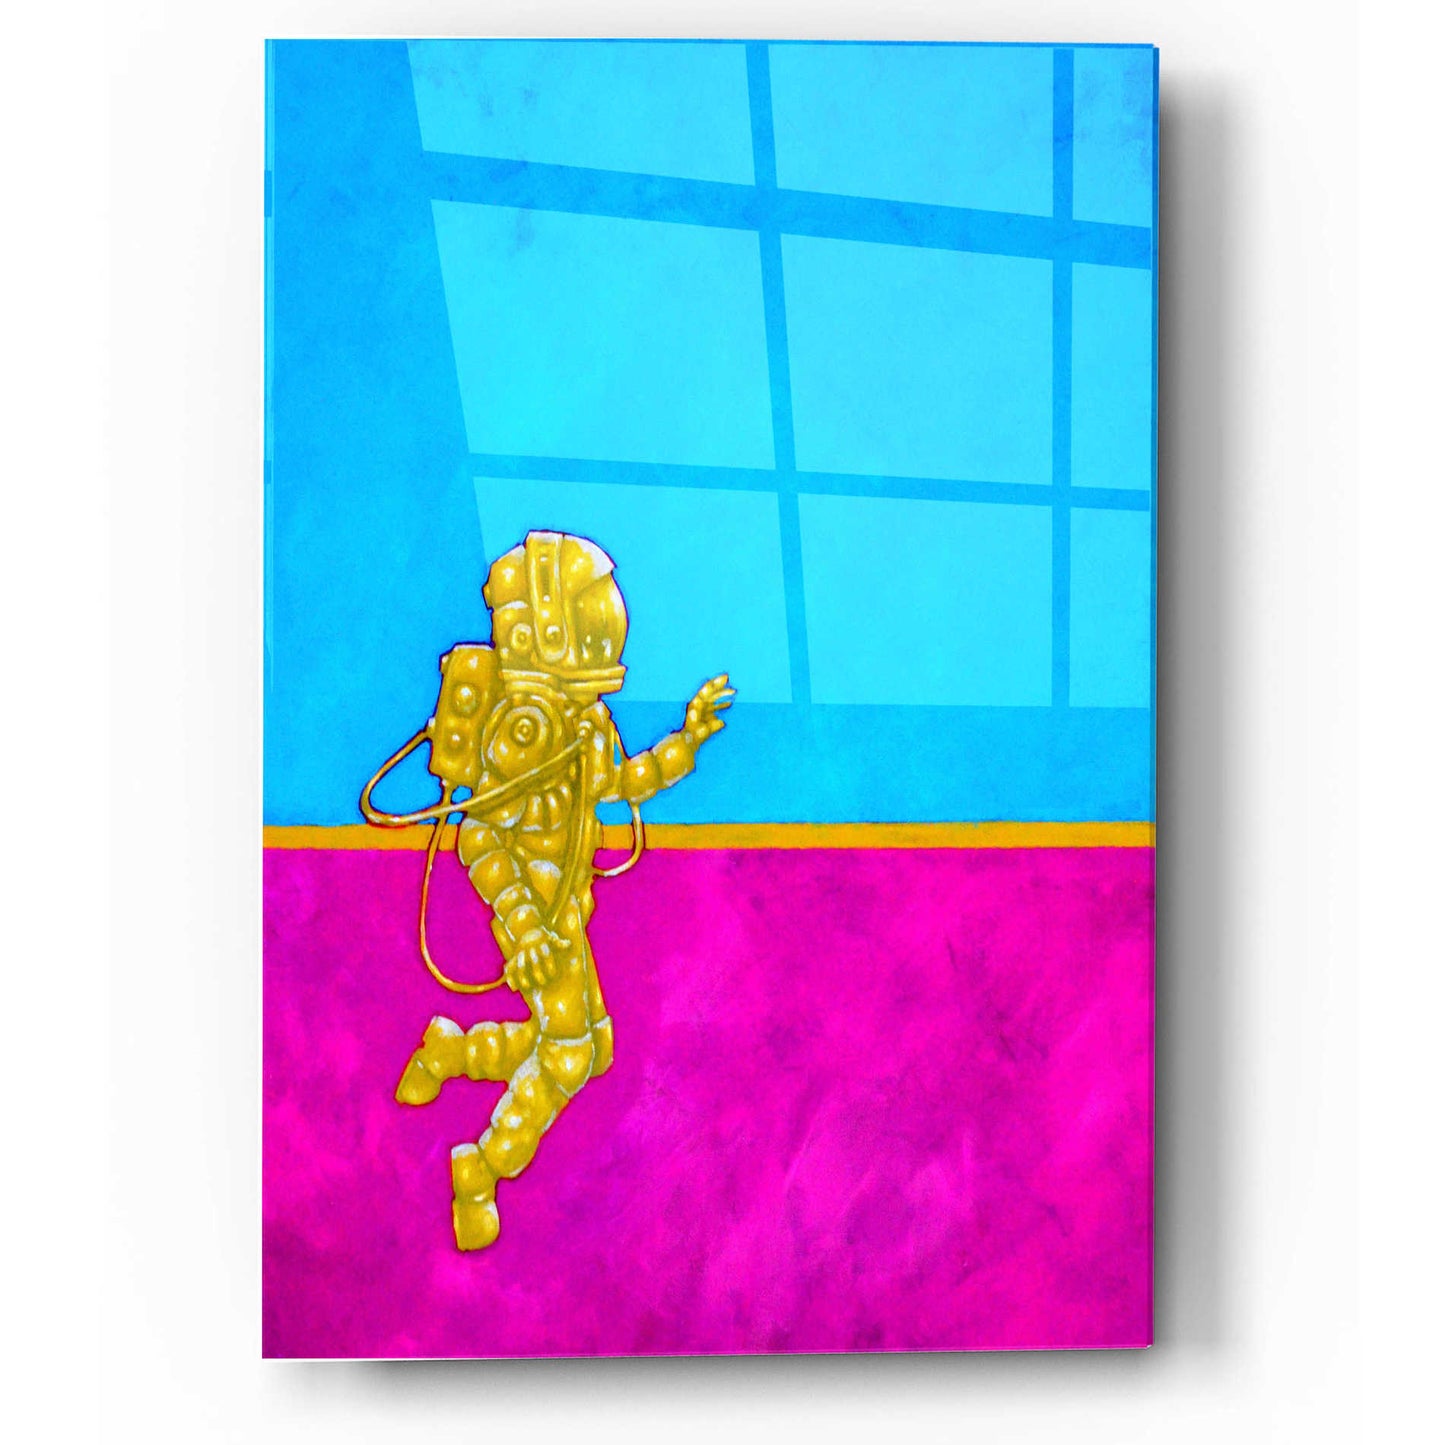 Epic Art 'Hallo Spaceboy II' by Craig Snodgrass, Acrylic Glass Wall Art,12x16